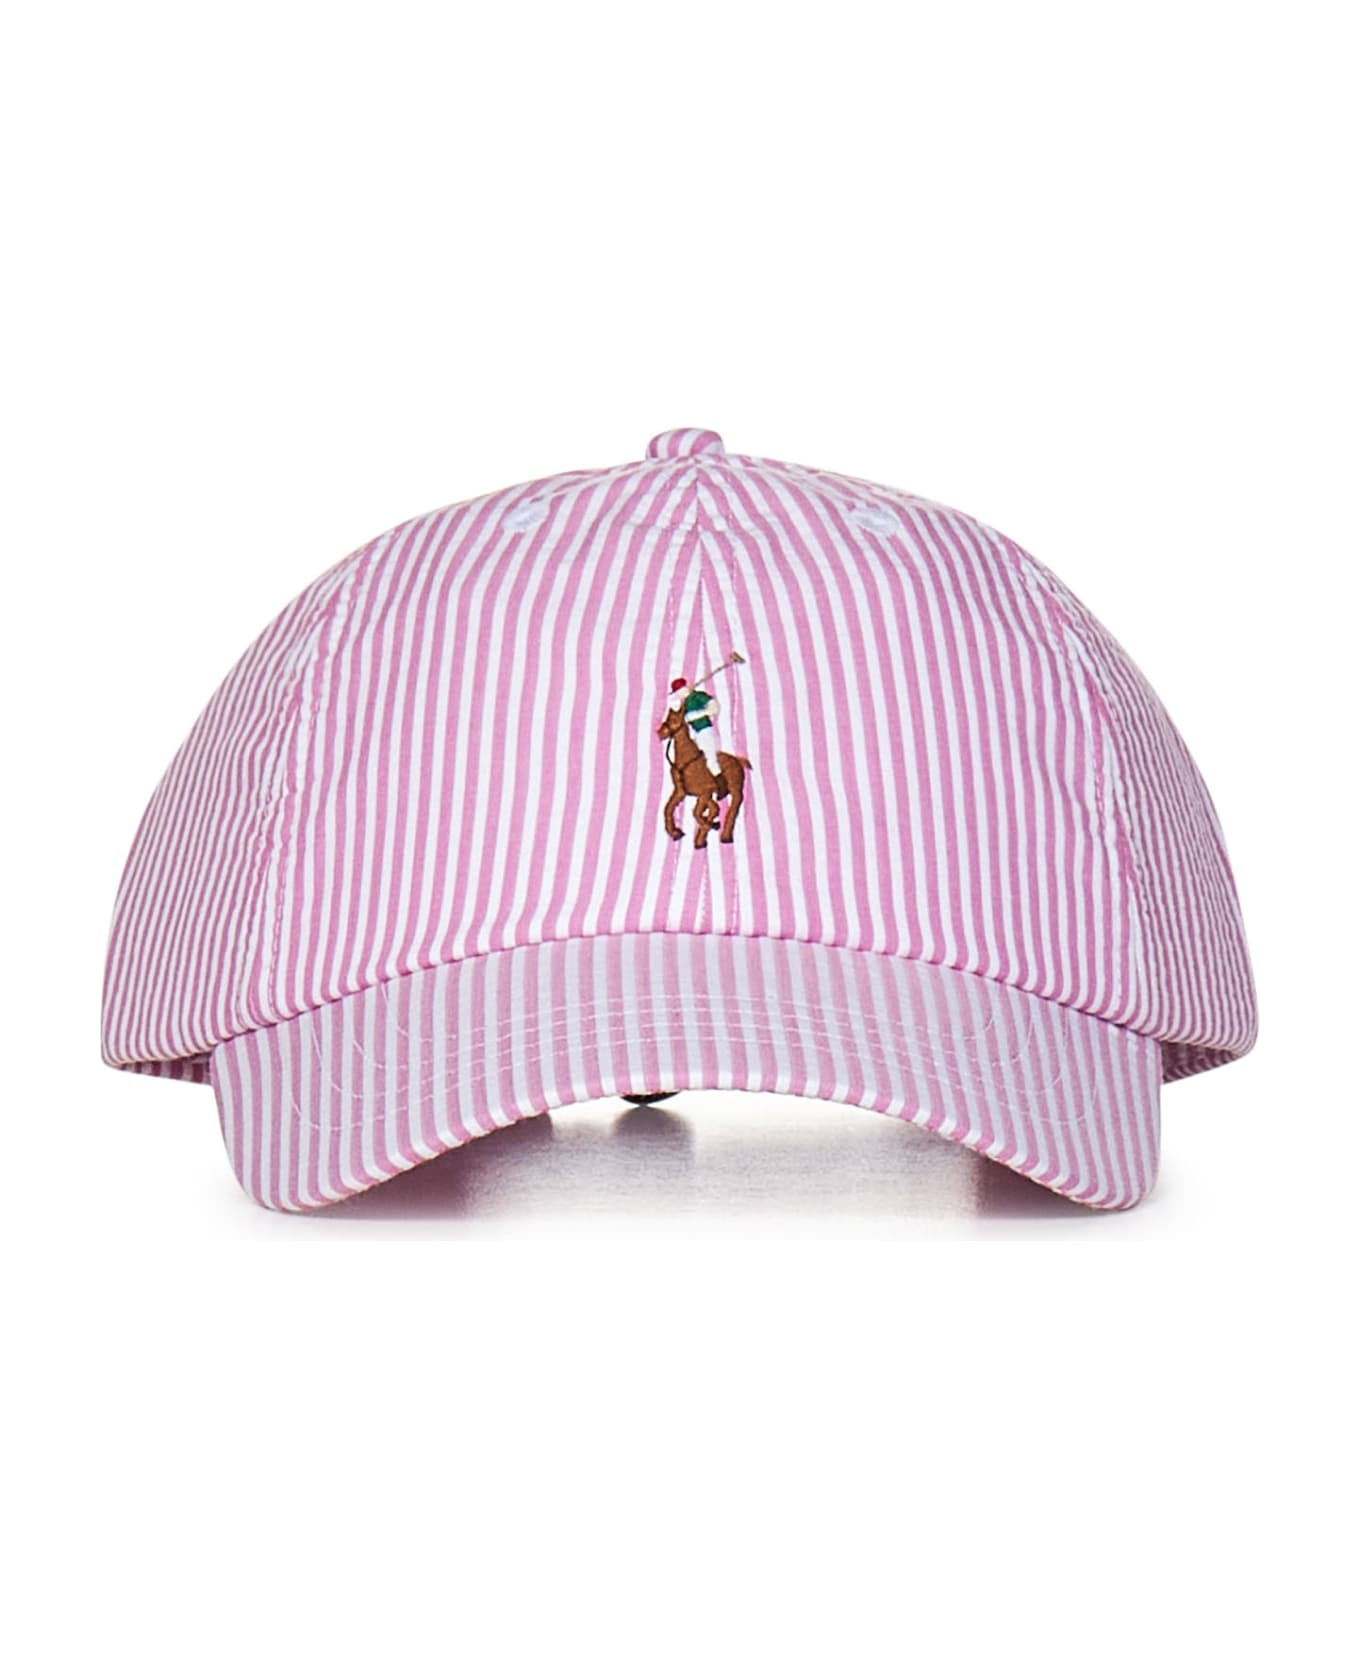 Polo Ralph Lauren Baseball Cap - PINK